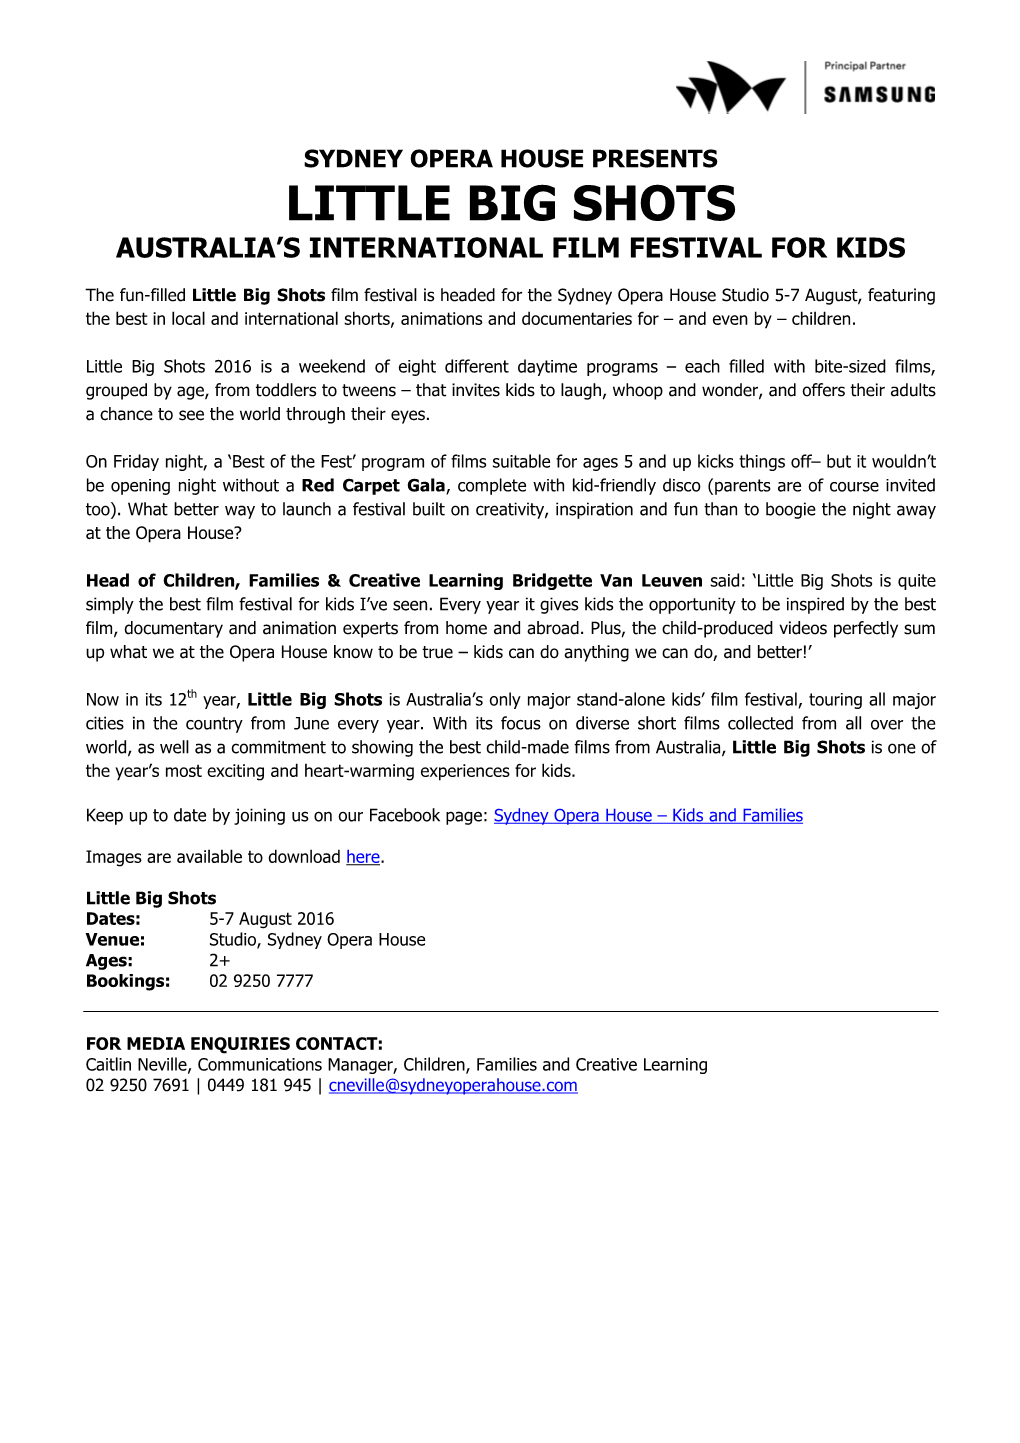 Little Big Shots Australia's International Film Festival for Kids